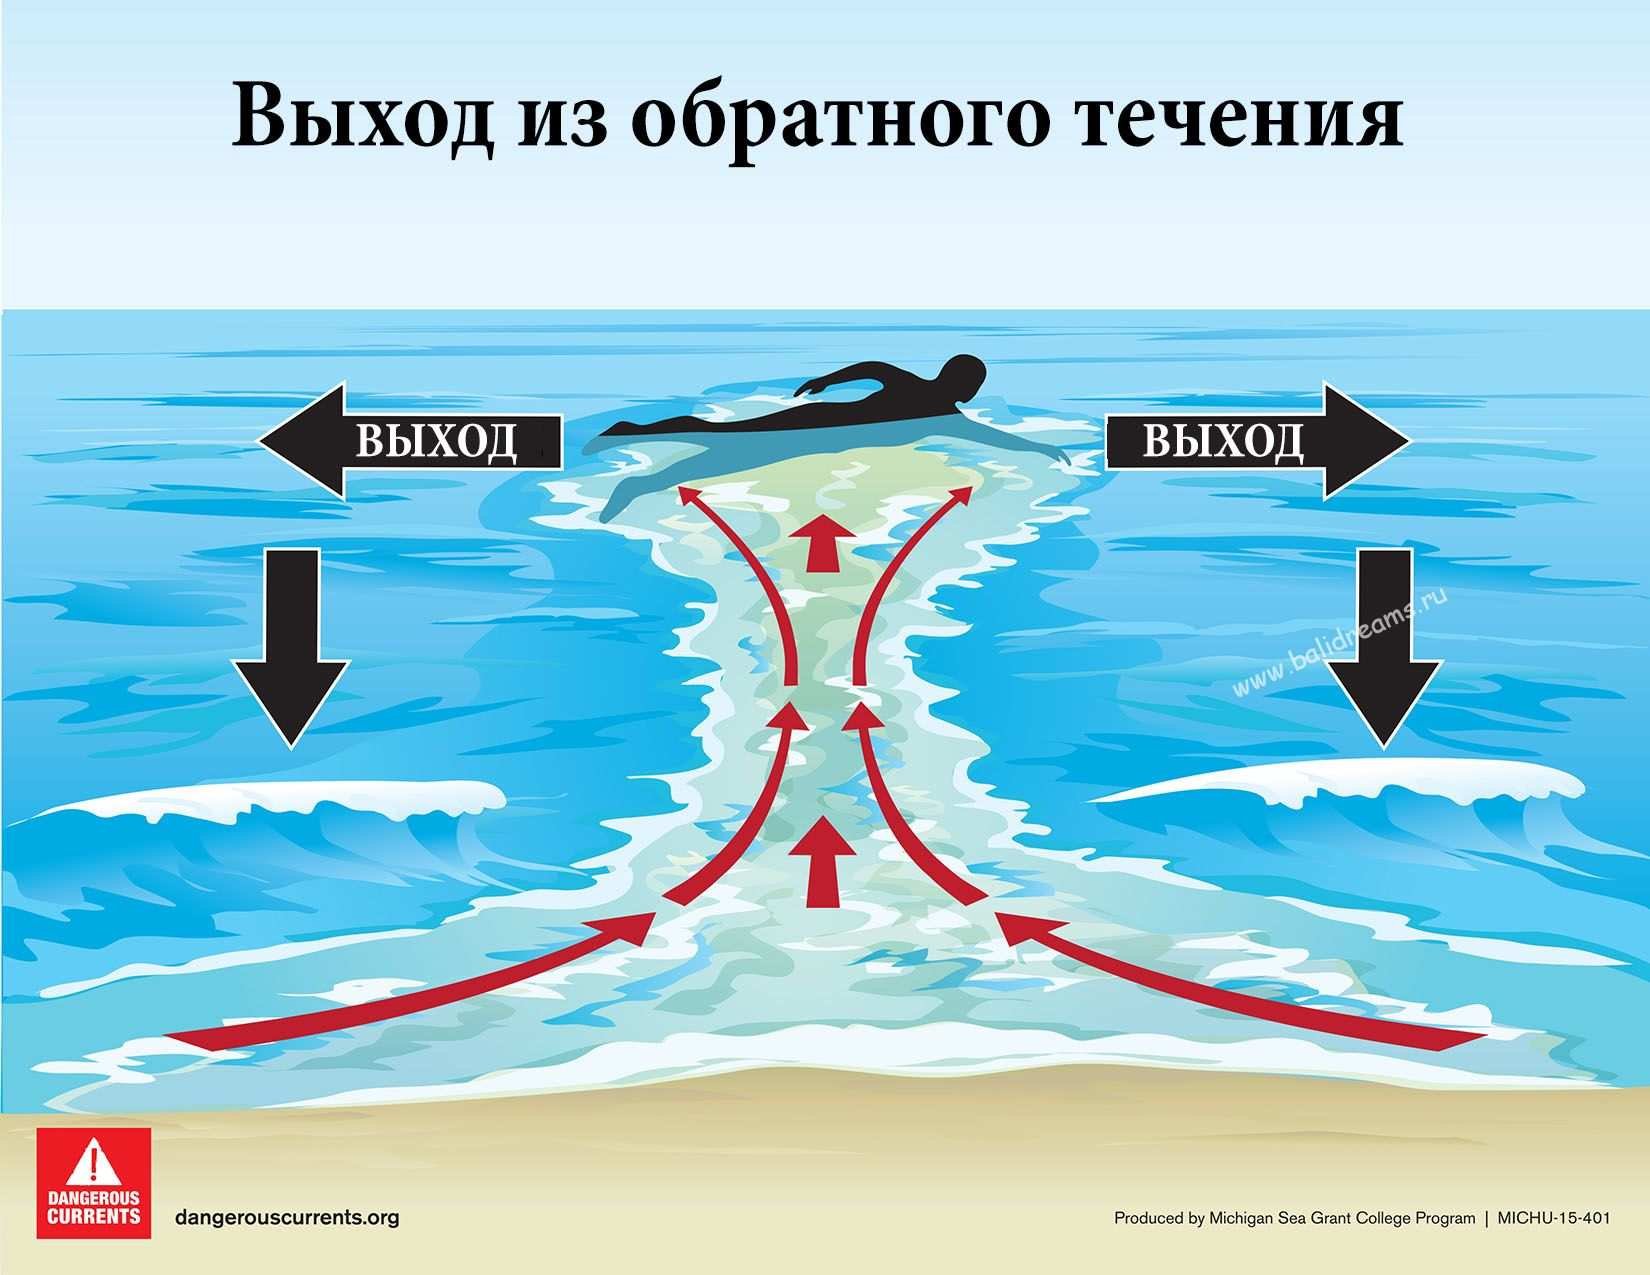 Очень сильные течения. Отбойное течение схема. Тягун рип обратное течение отбойное течение. Волны тягуны. Обратное течение в море.